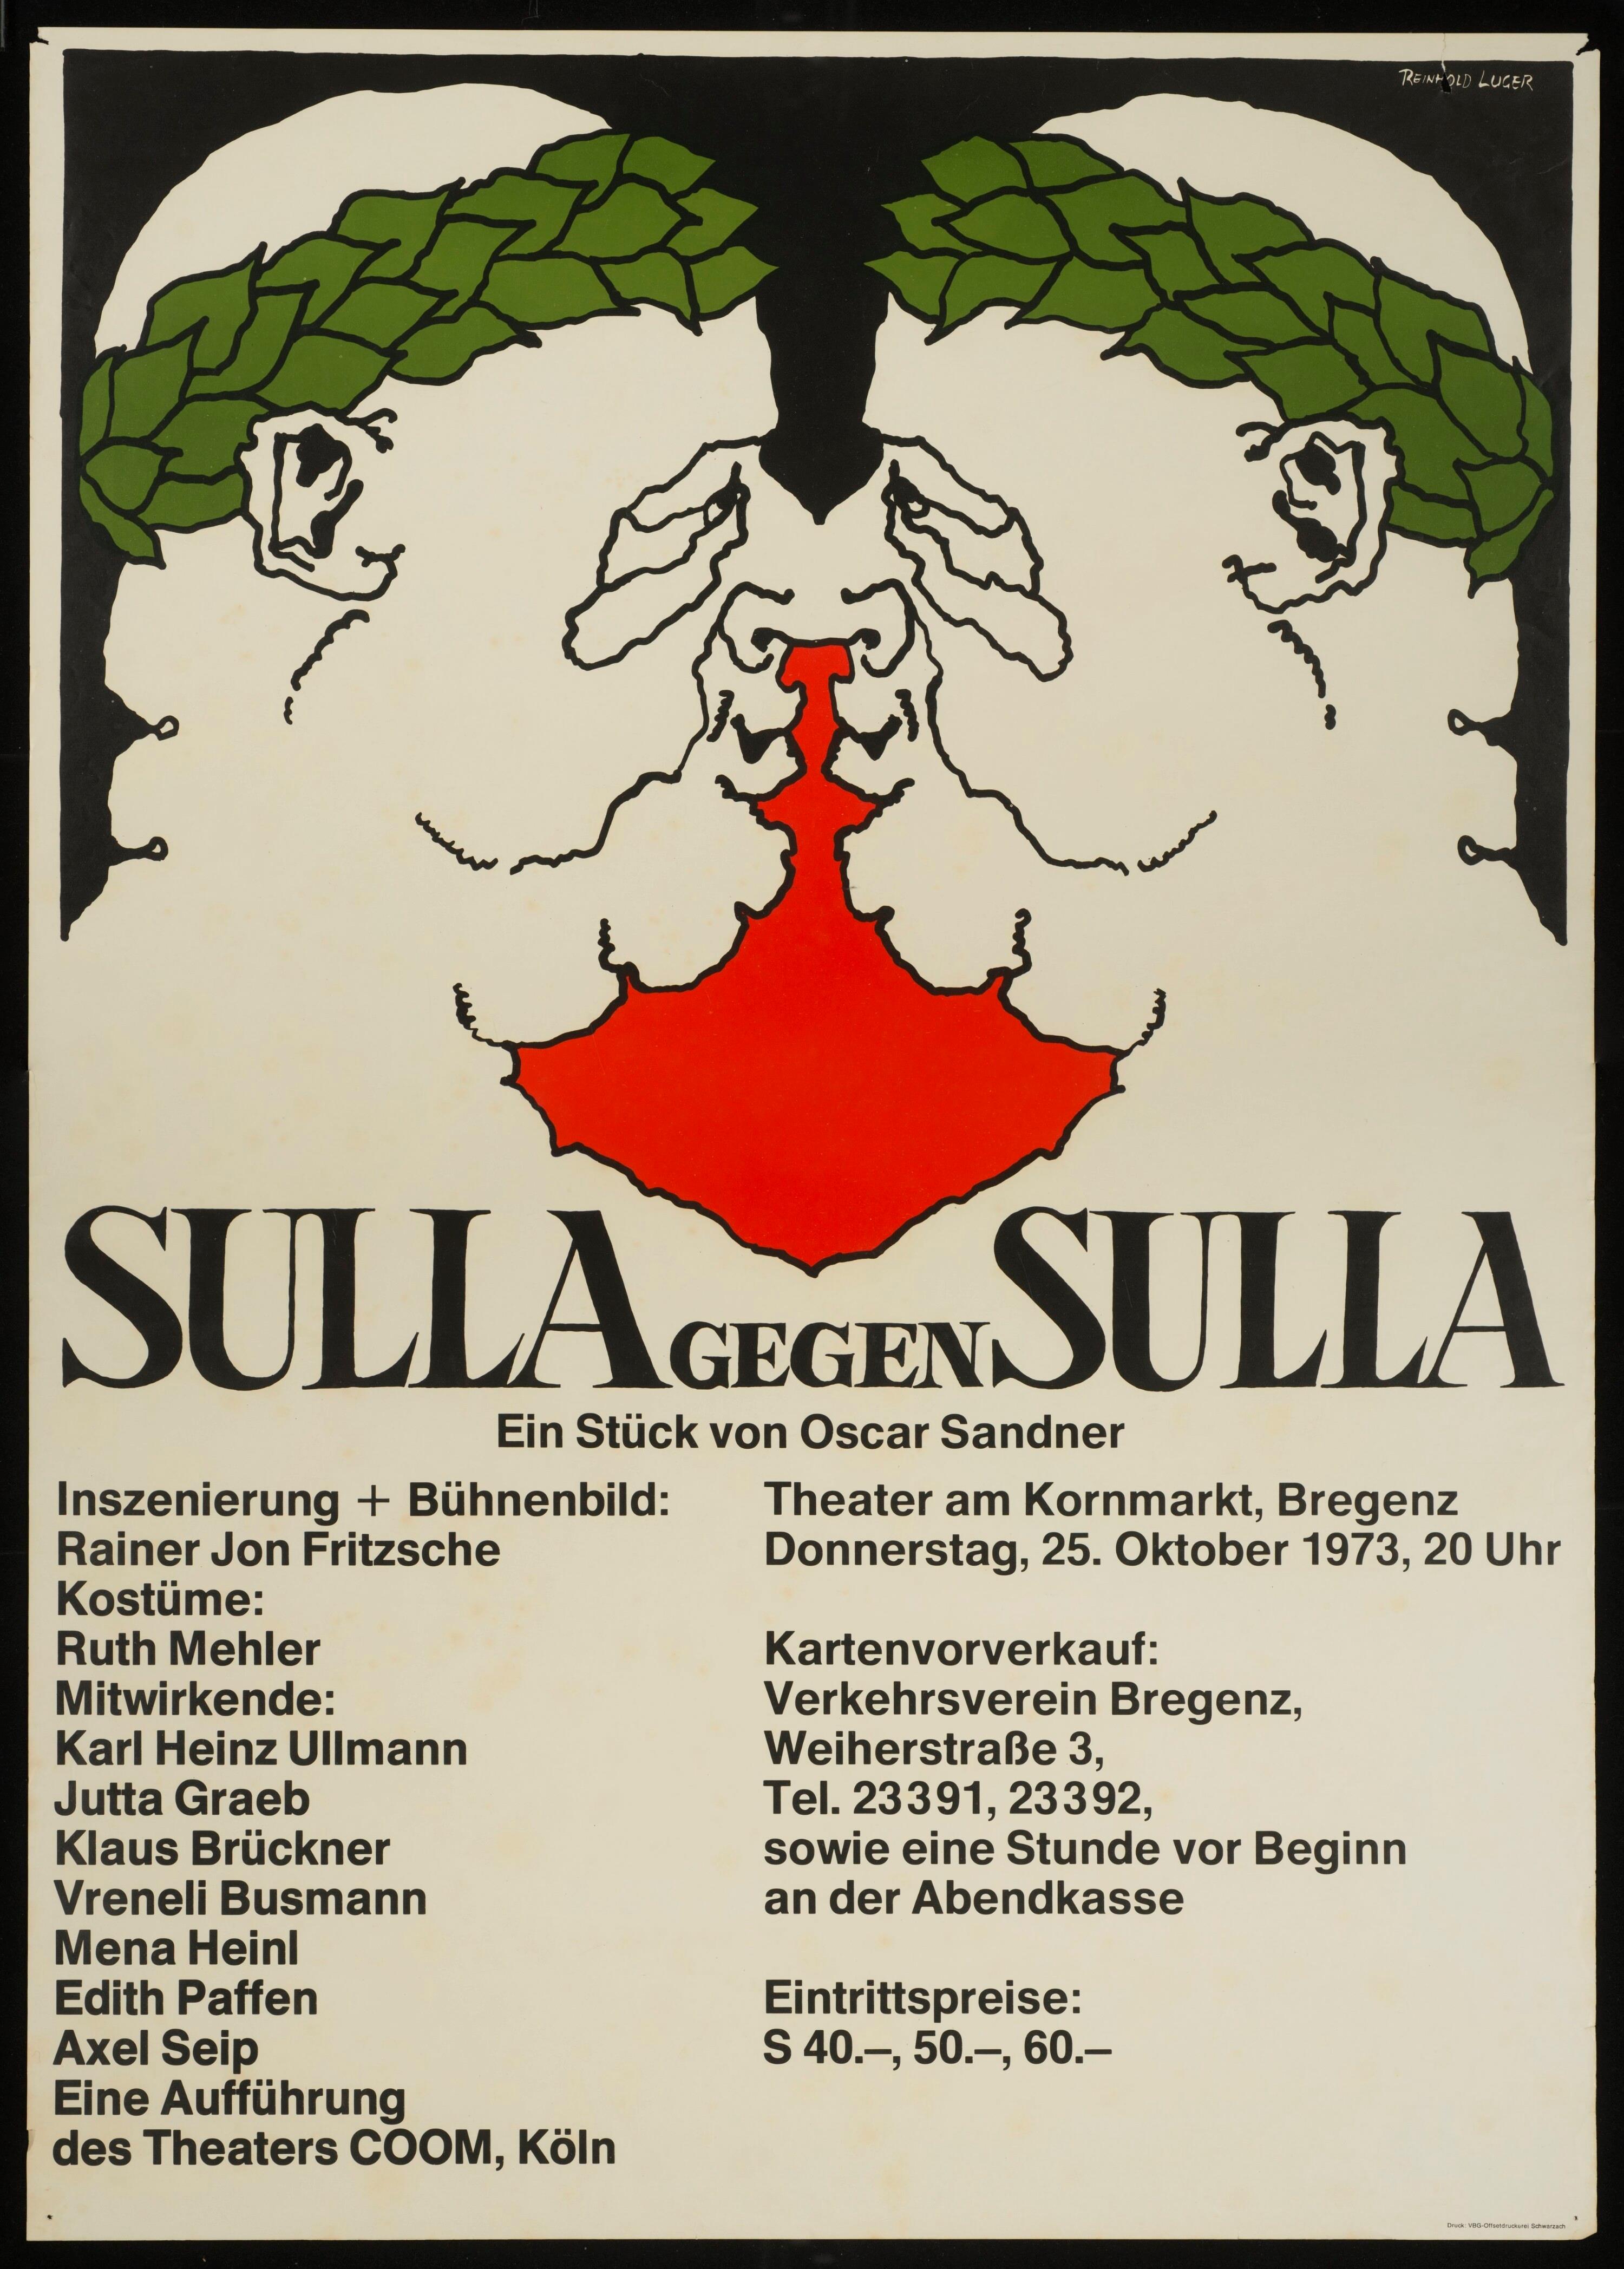 Sulla gegen Sulla></div>


    <hr>
    <div class=